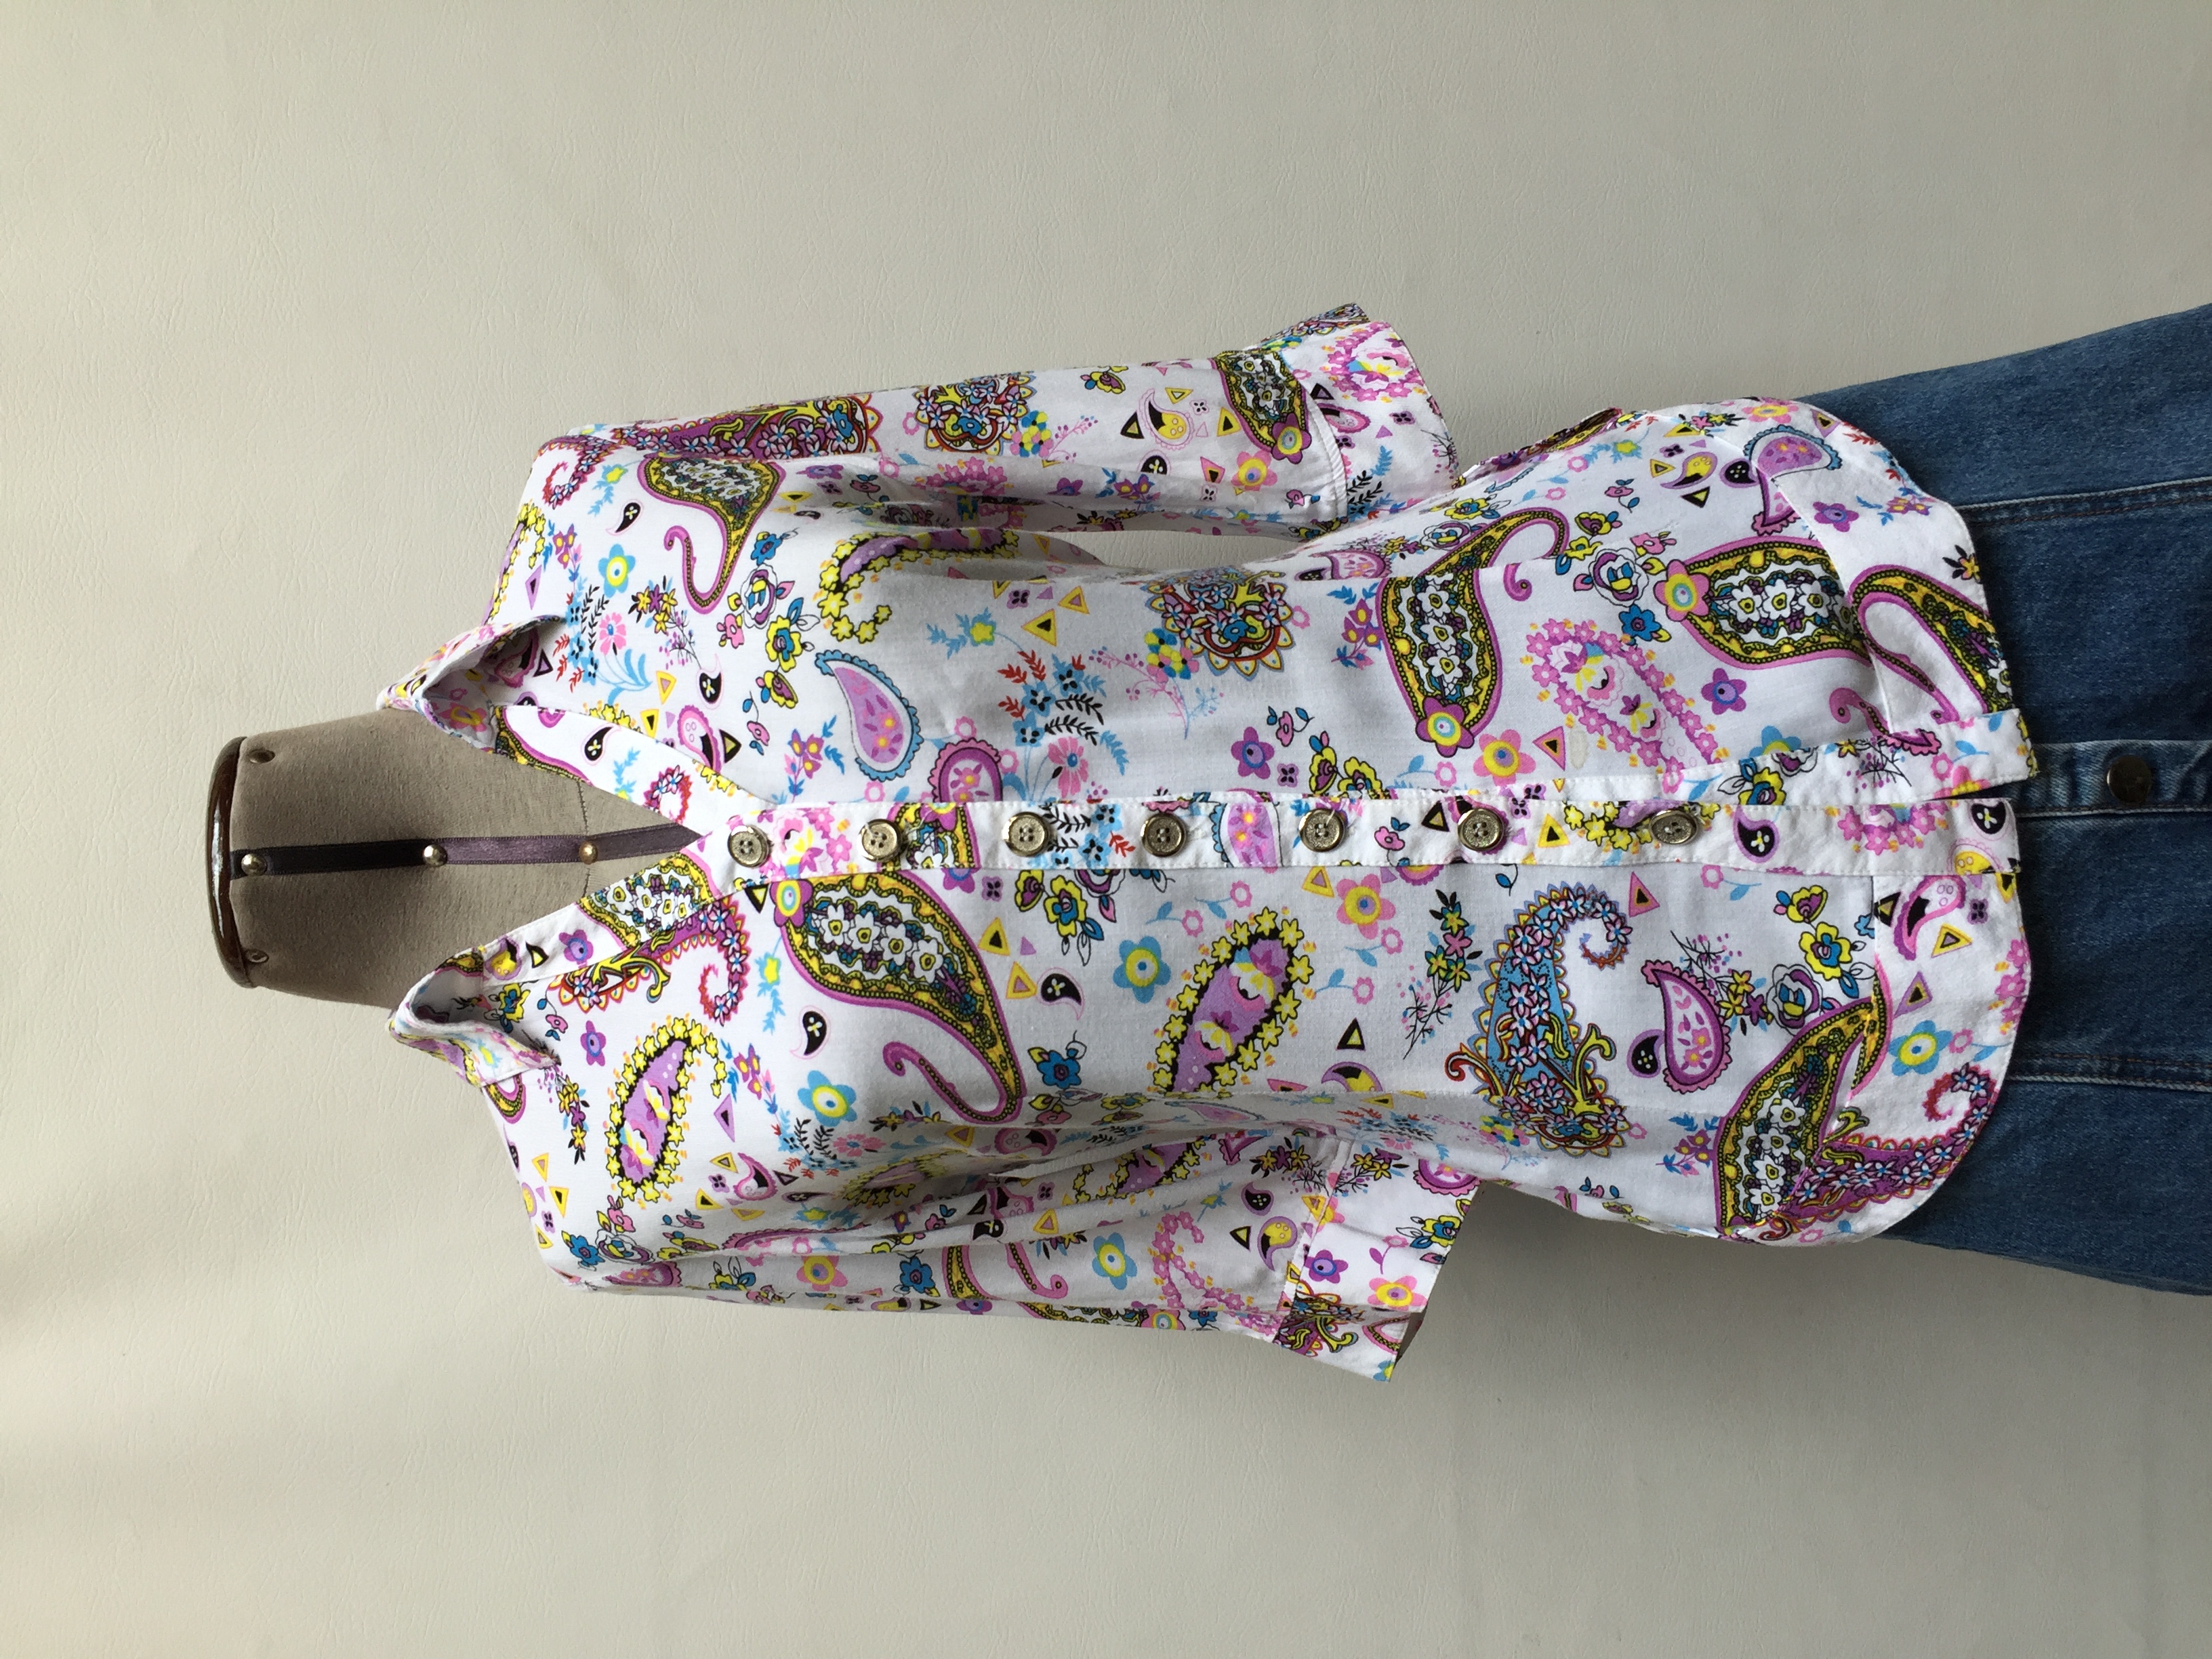 Blusa blanca con estampado de colores paisley, cuello camisero con fila de botones y manga 3/4. Tela fresca!
Talla S